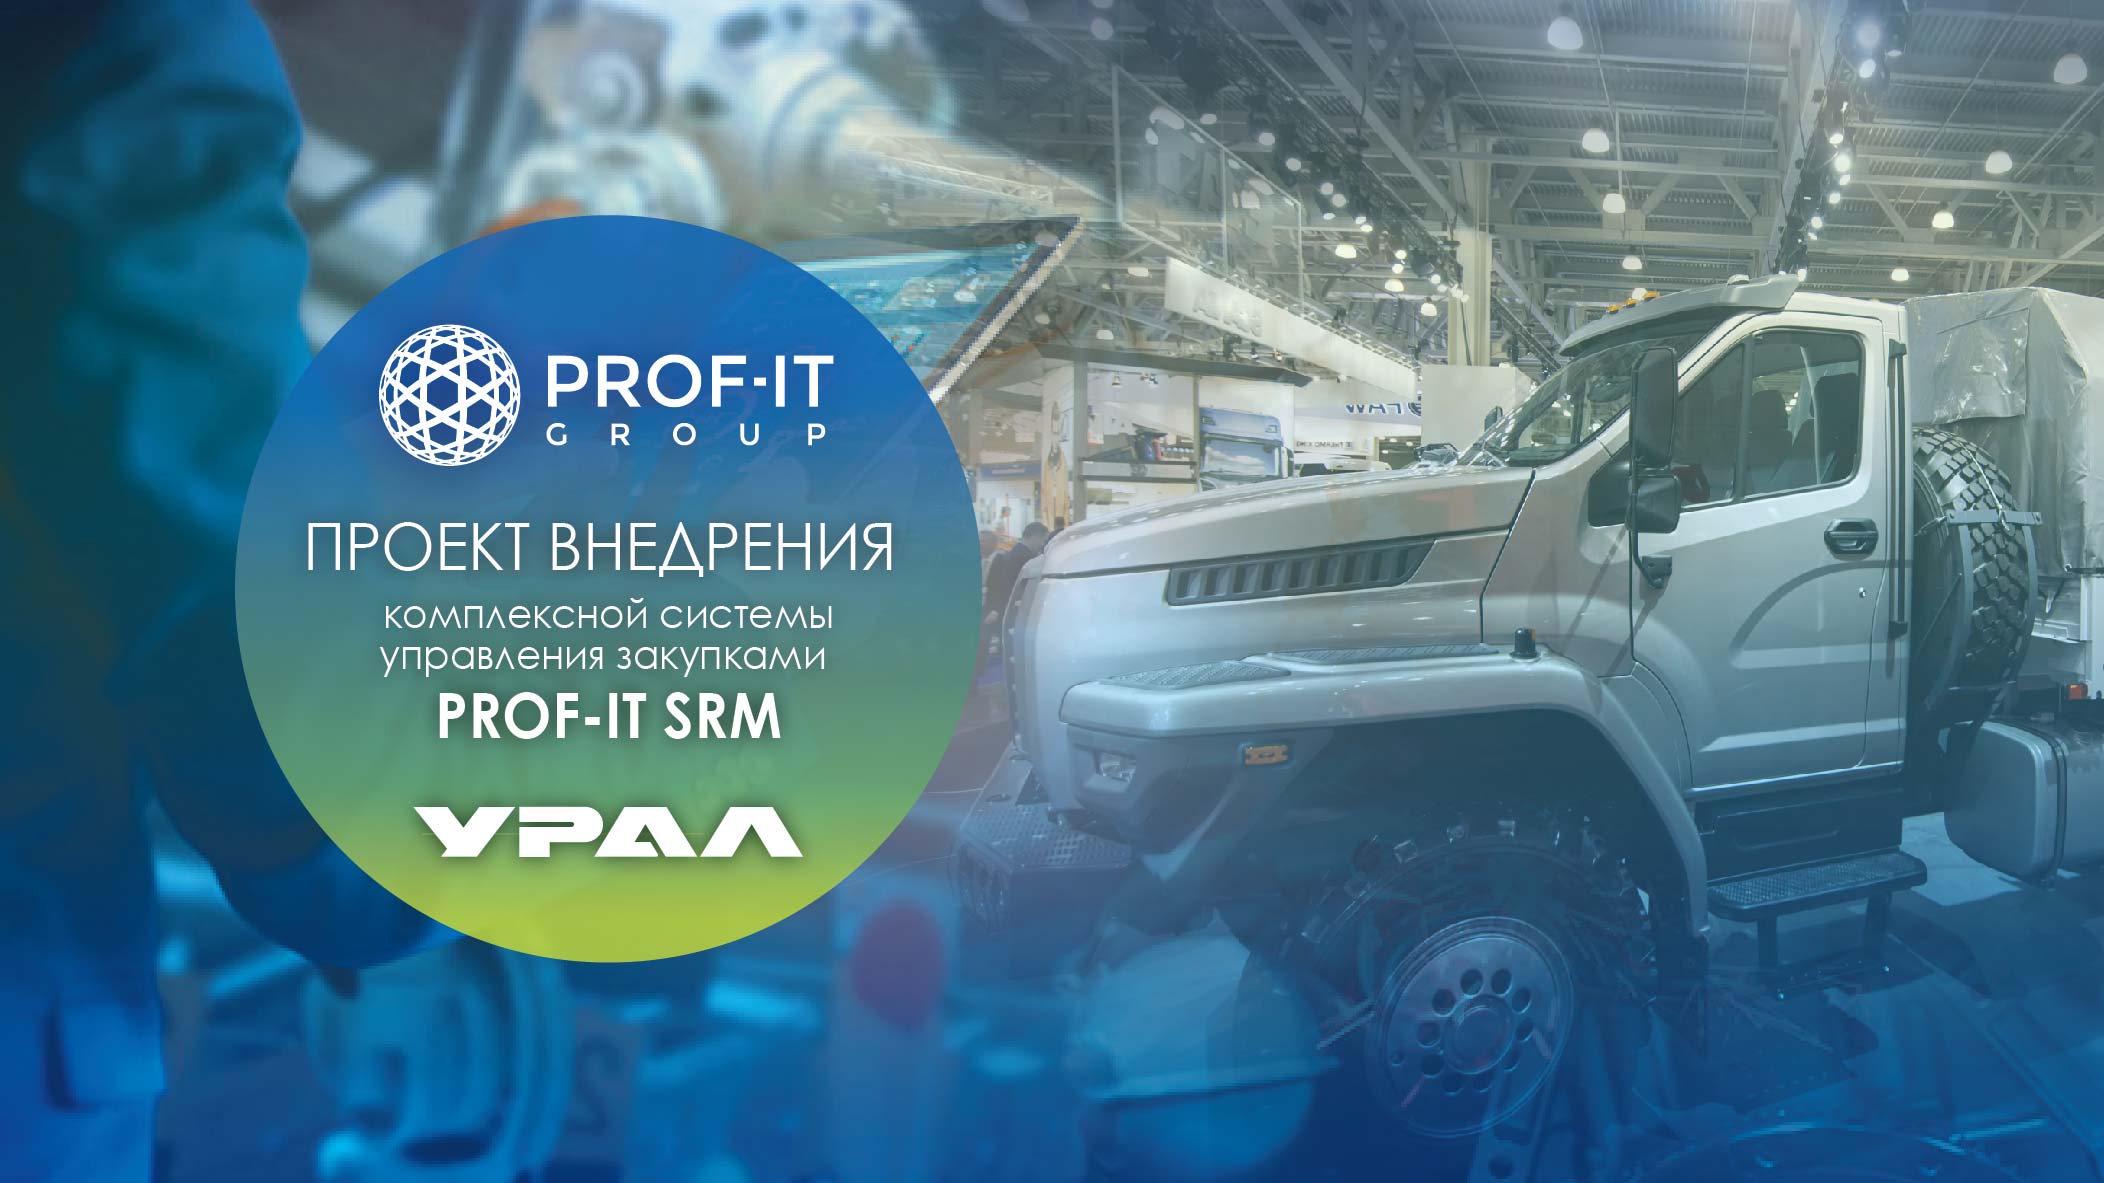 Автомобильный завод «УРАЛ» внедрил комплексную систему управление закупками от PROF-IT GROUP